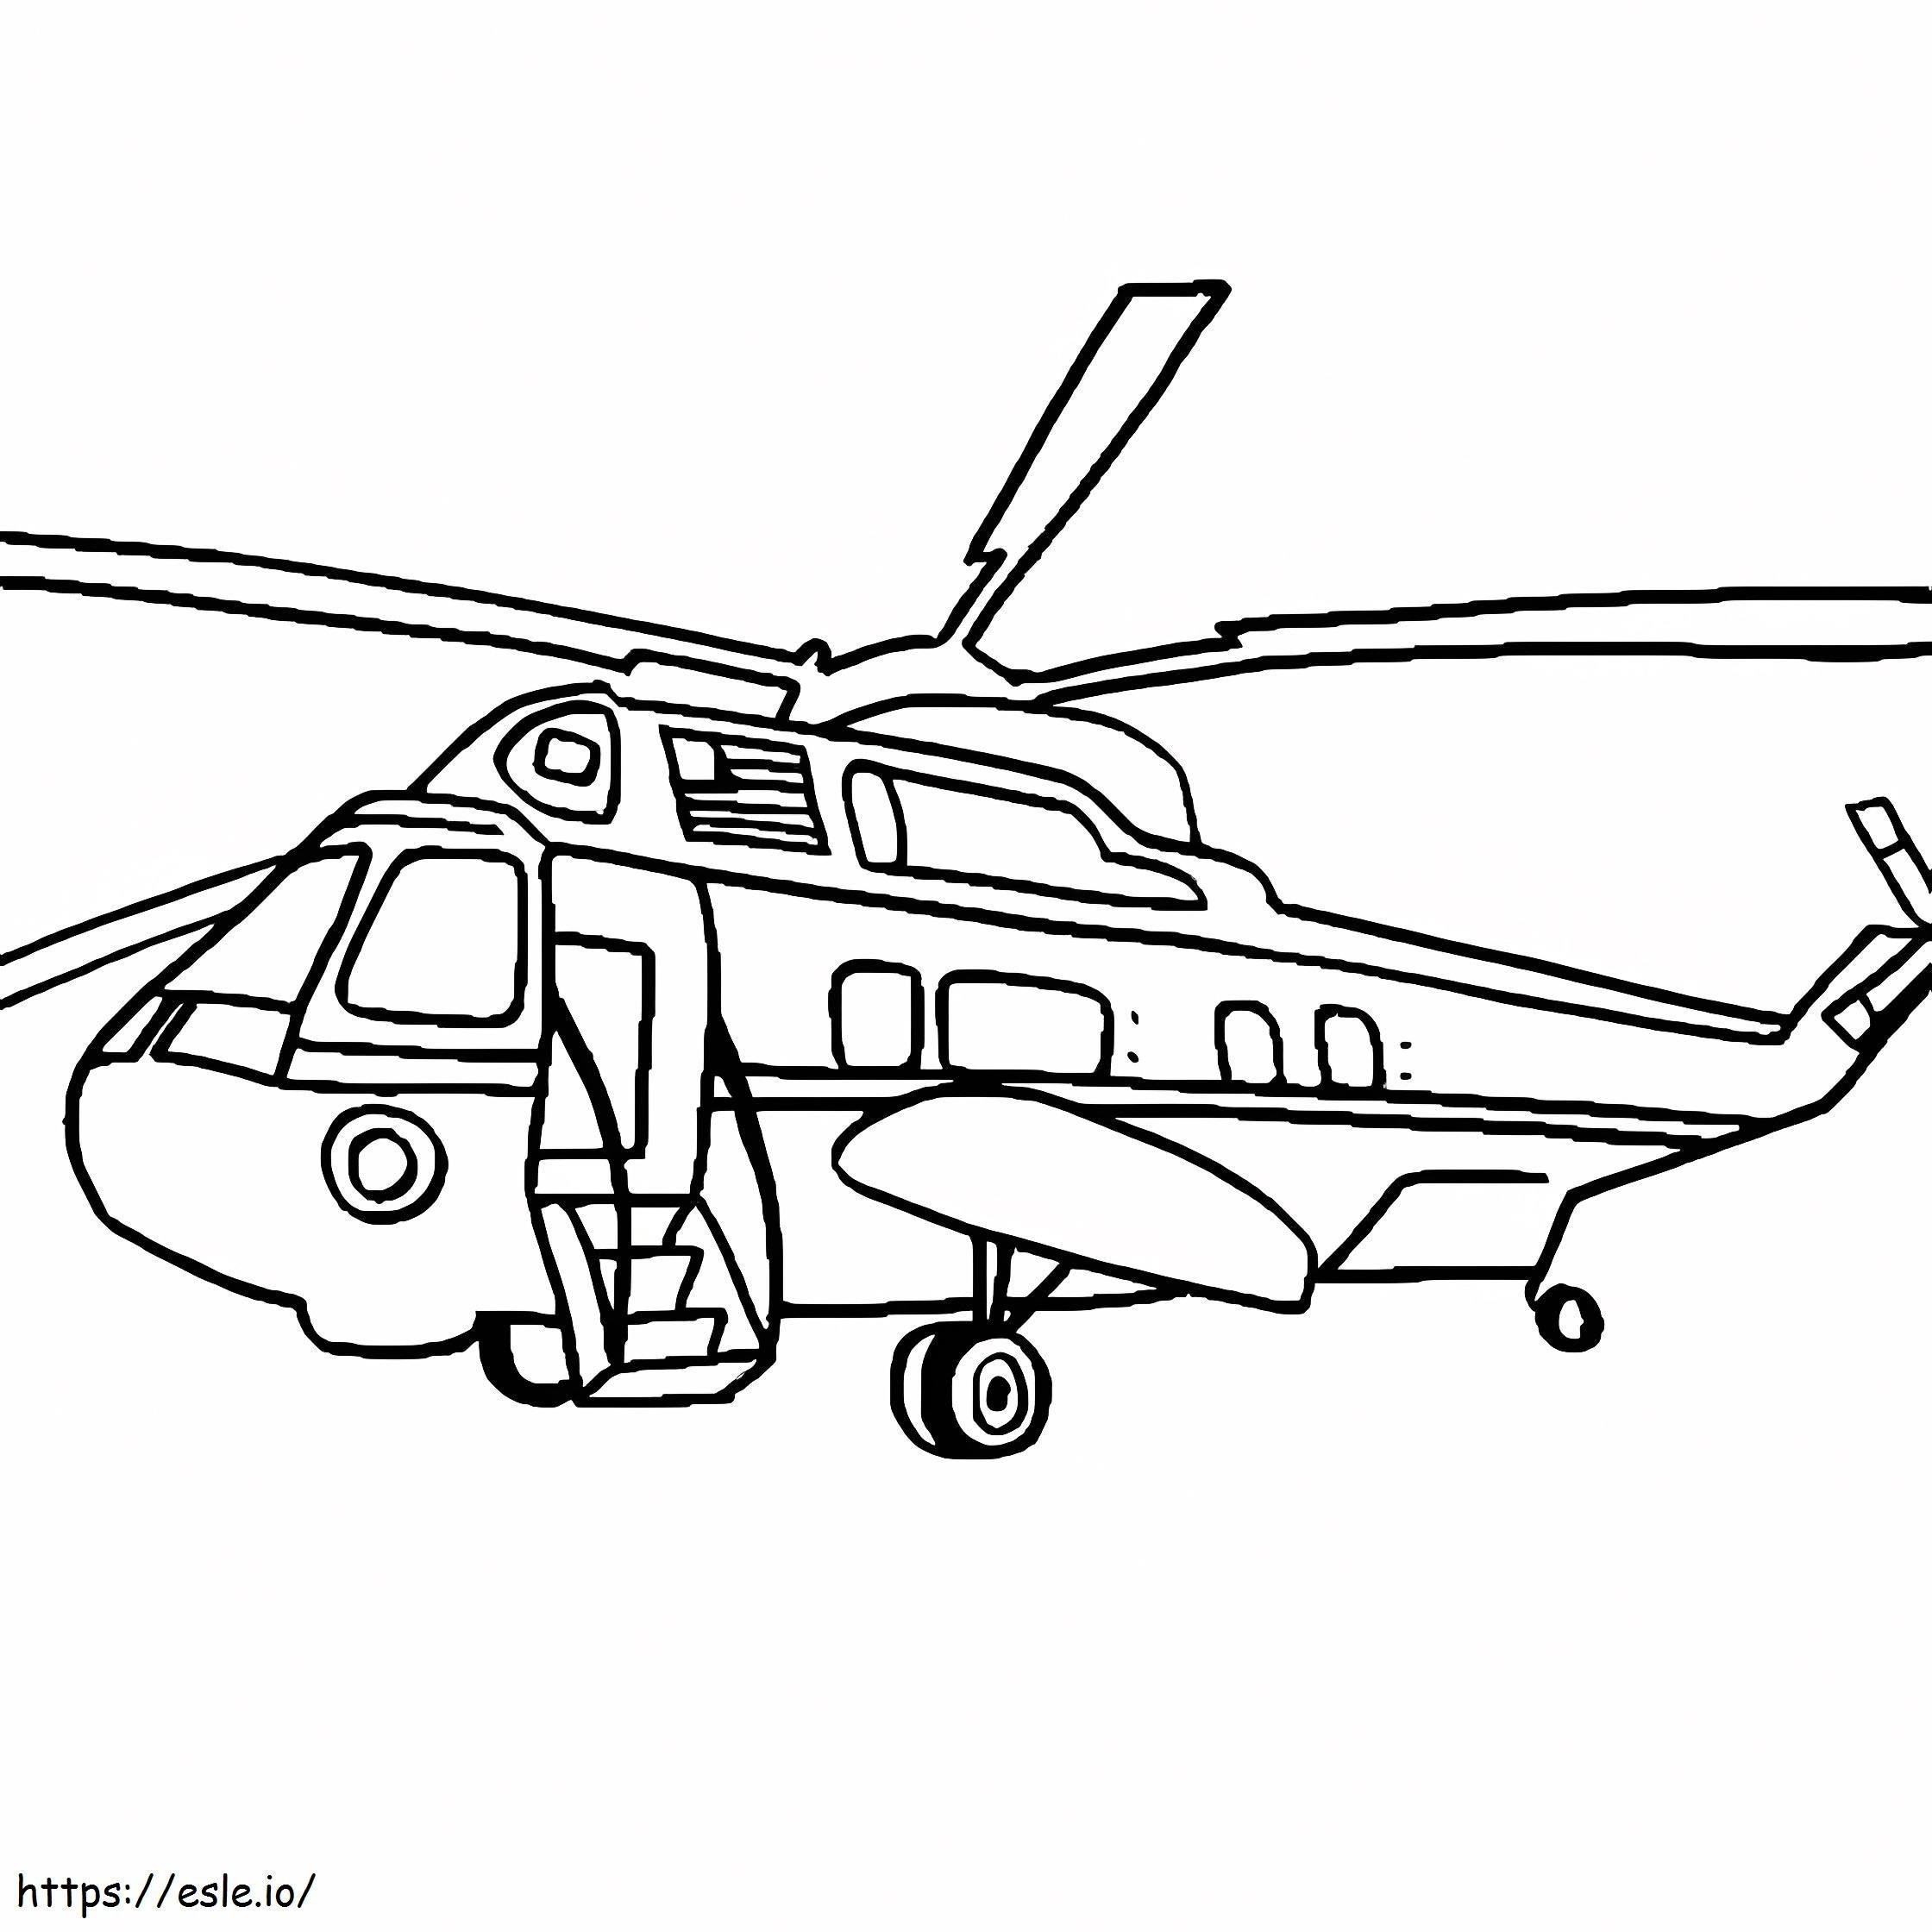 Elicottero Blackhawk da colorare